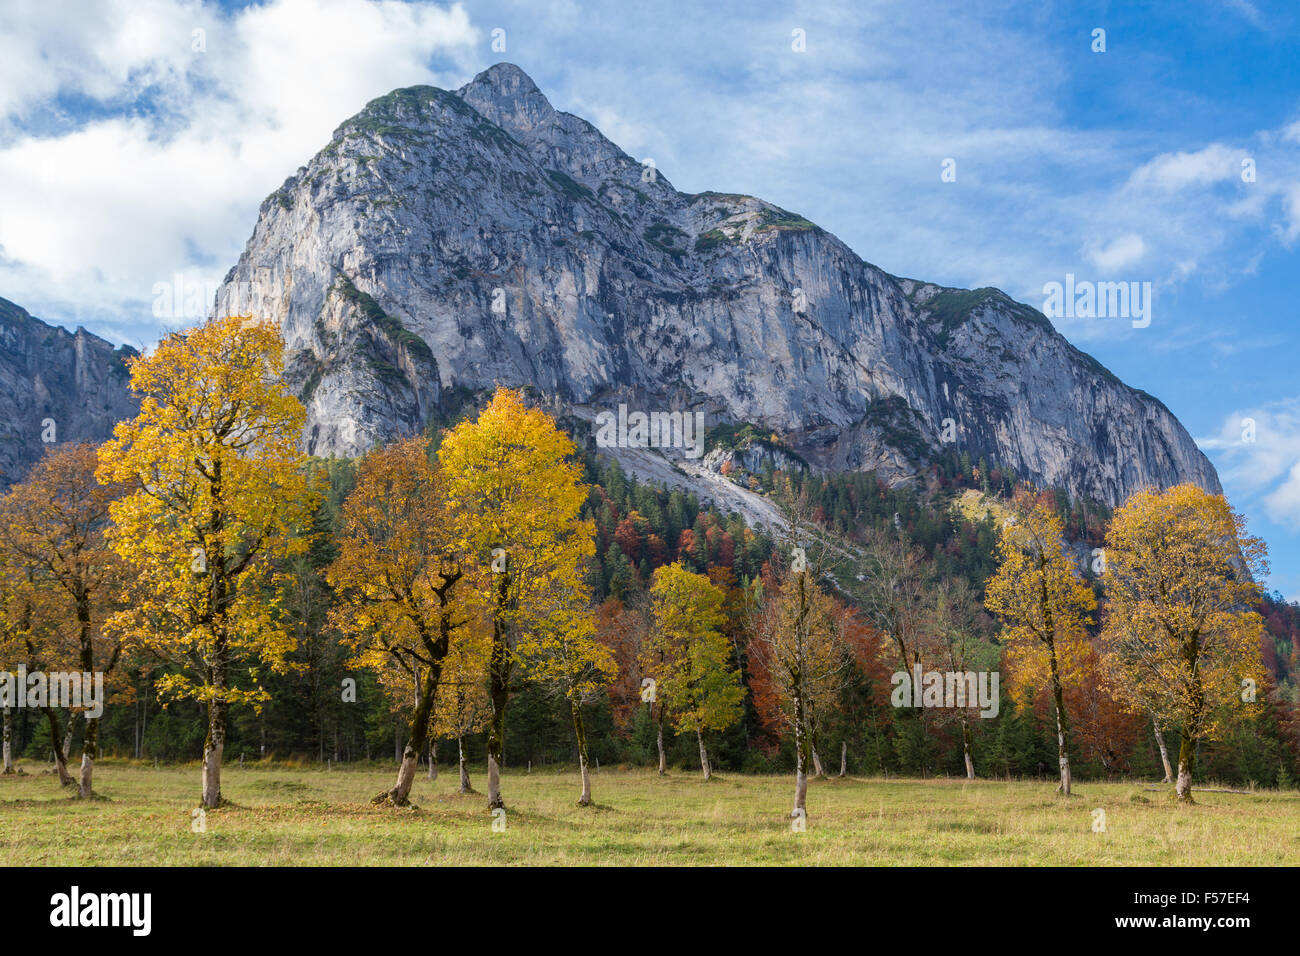 Bunten Herbst Bäume vor Gamsjoch Berg, Großer Ahornboden, Eng-Alm, Hinterriss, Karwendel, Tirol, Österreich Stockfoto